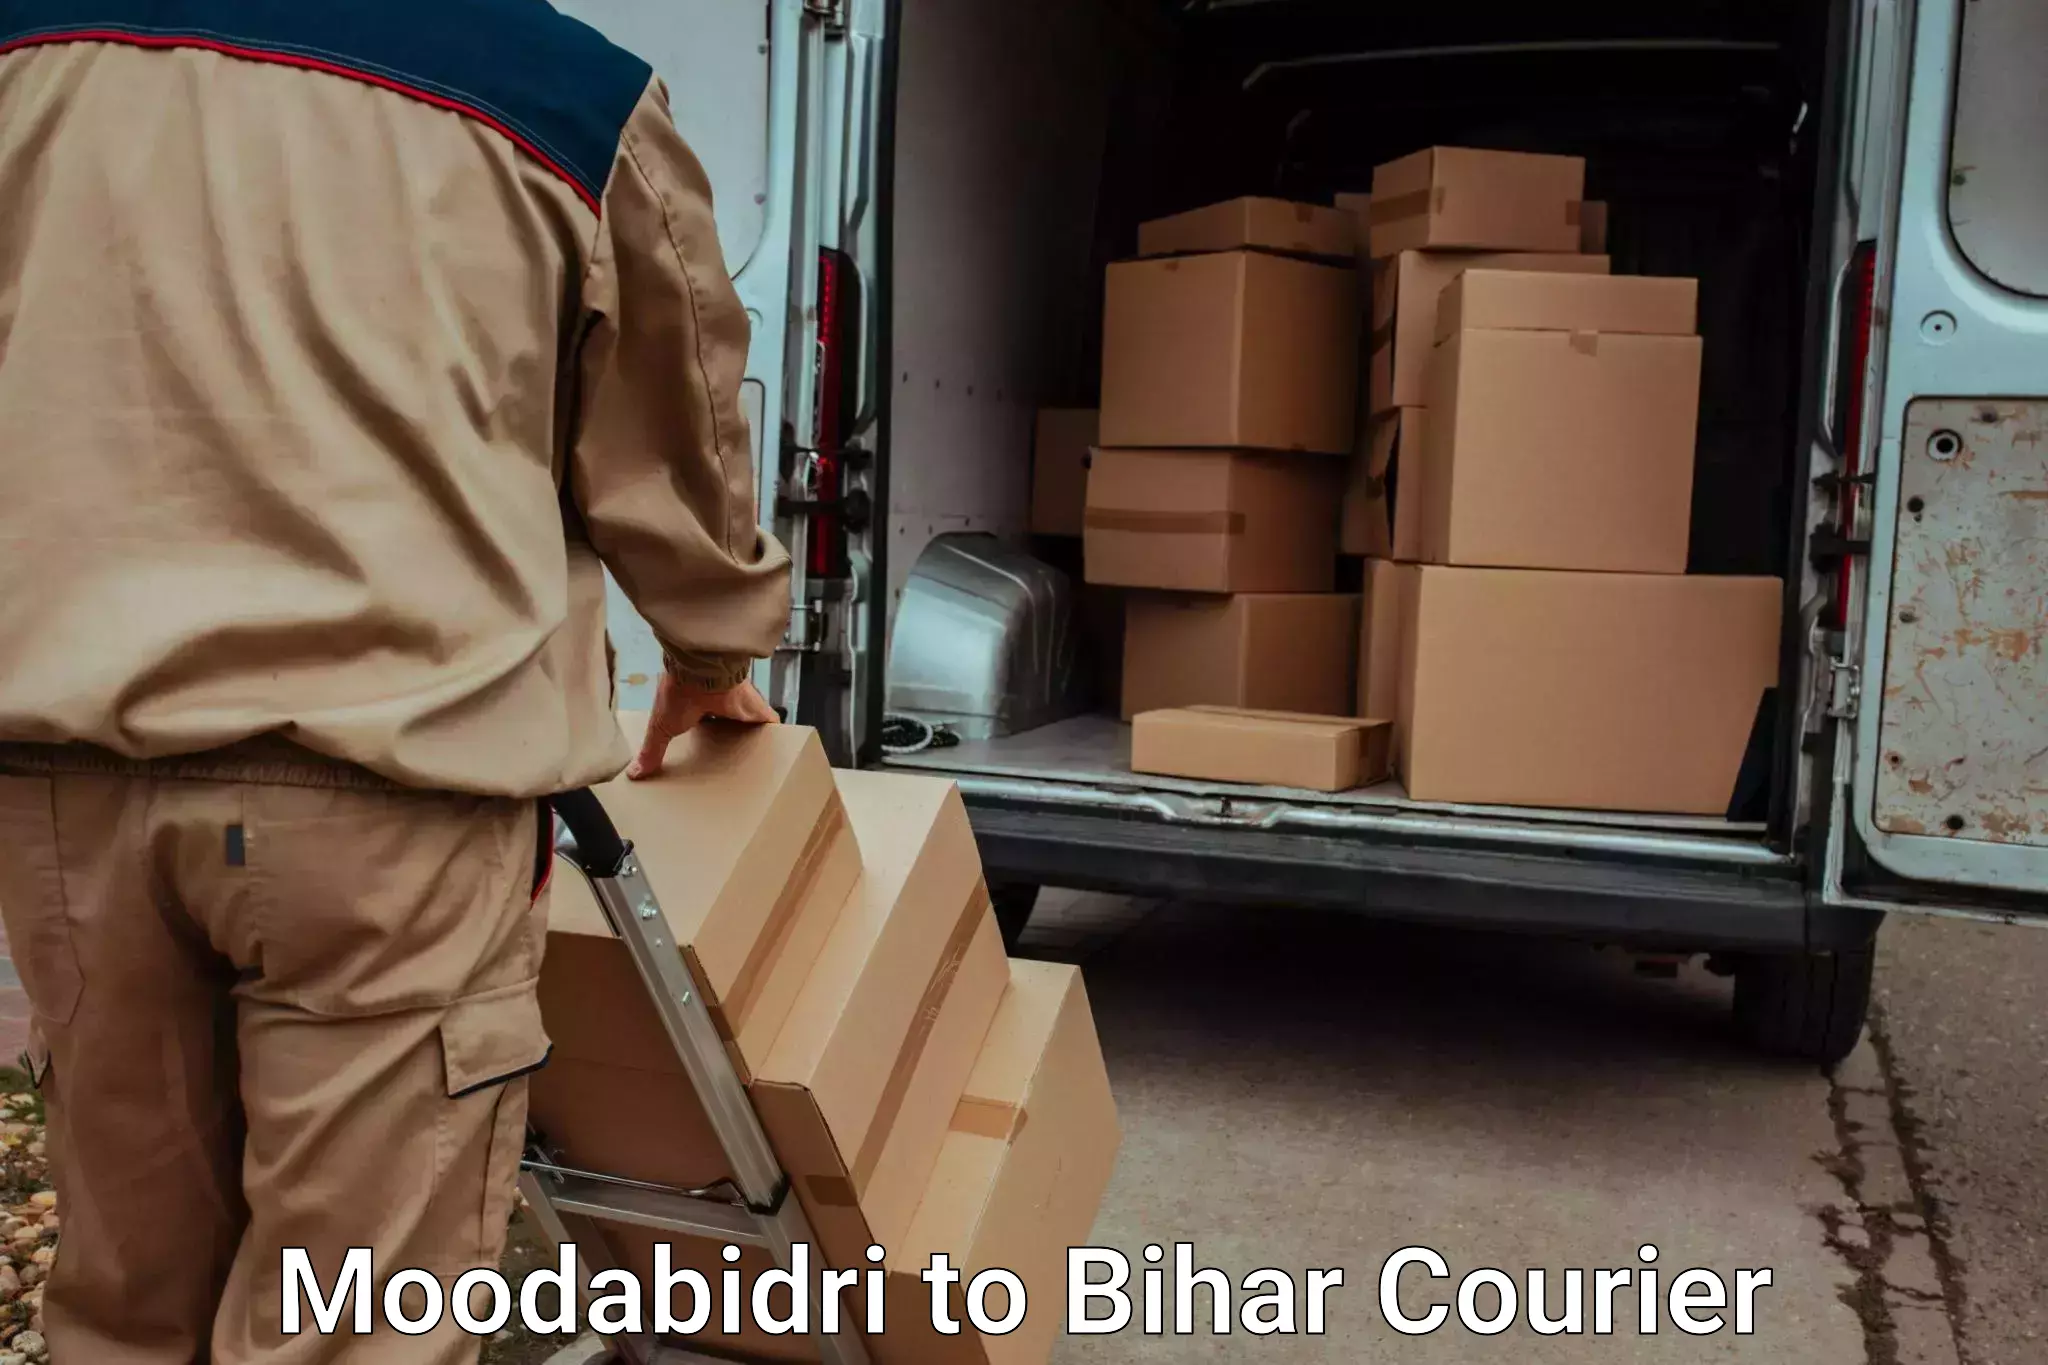 Furniture transport experts Moodabidri to Bihar